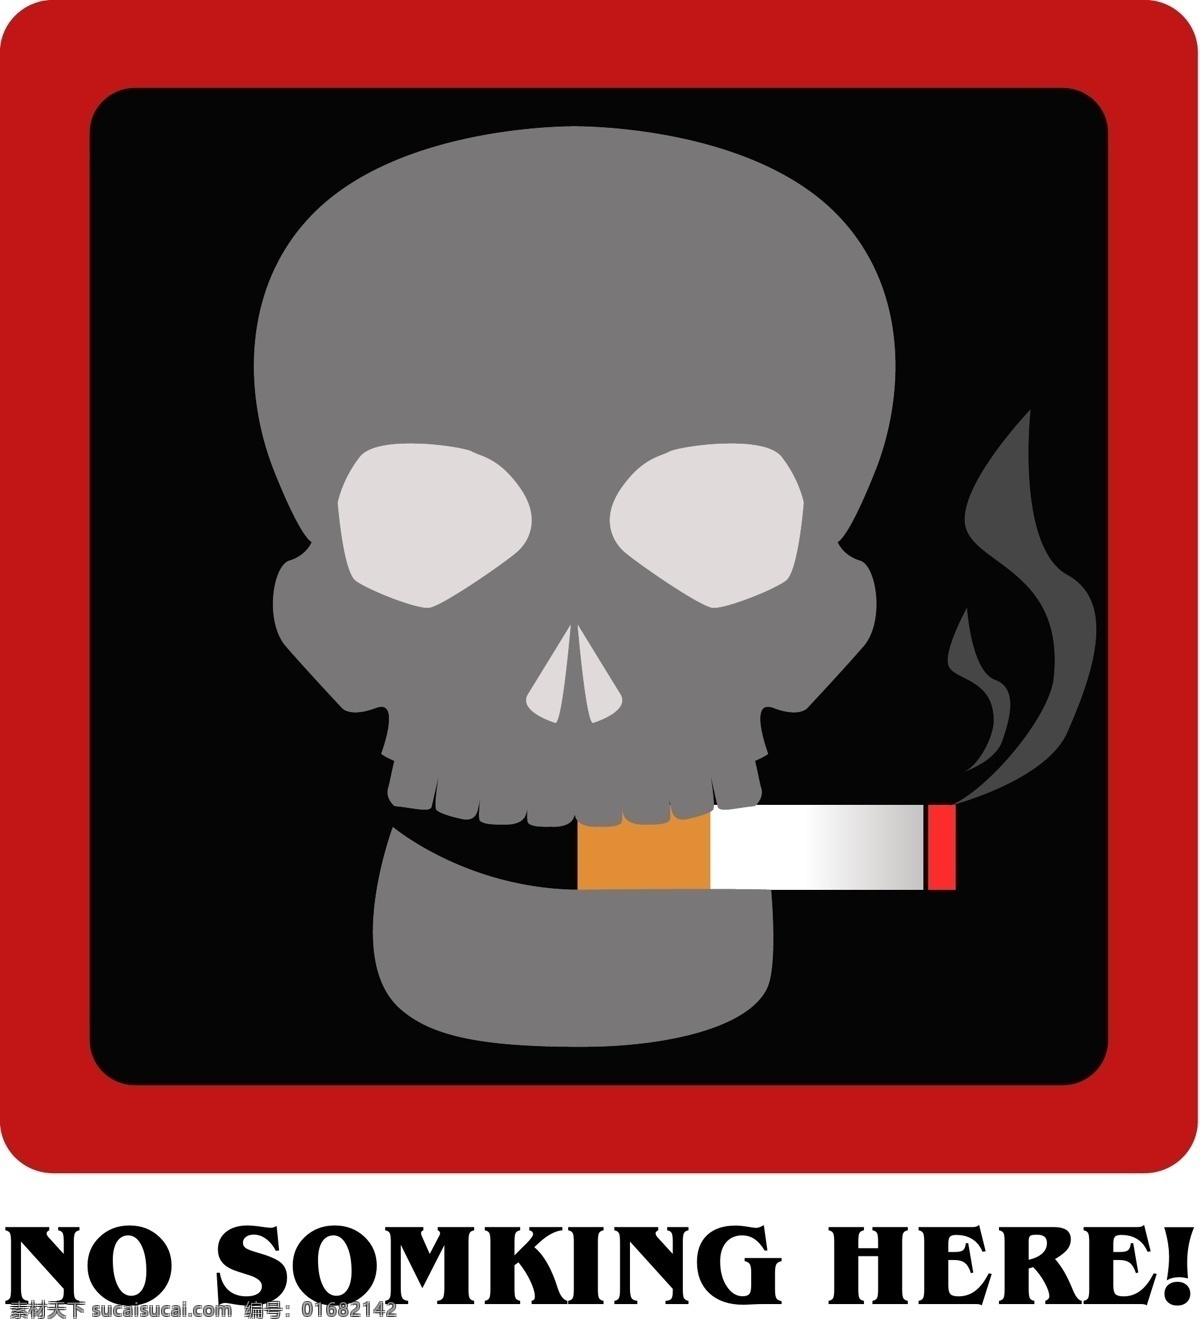 世界 禁烟 日 图标 矢量图 世界禁烟日 红黑 方形 矢量 骷髅 朋克 香烟 死亡 禁烟图标 请勿吸烟 方形标识